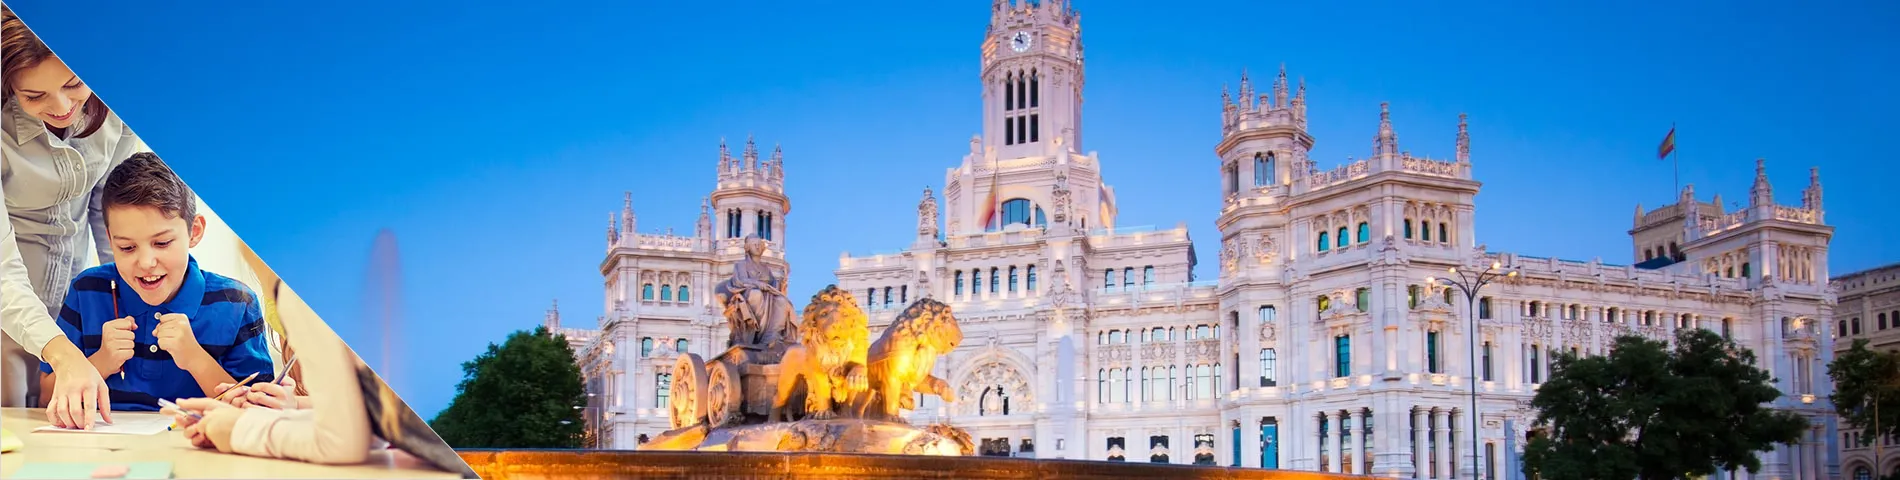 Madrid - Espanhol para Formação de Professores